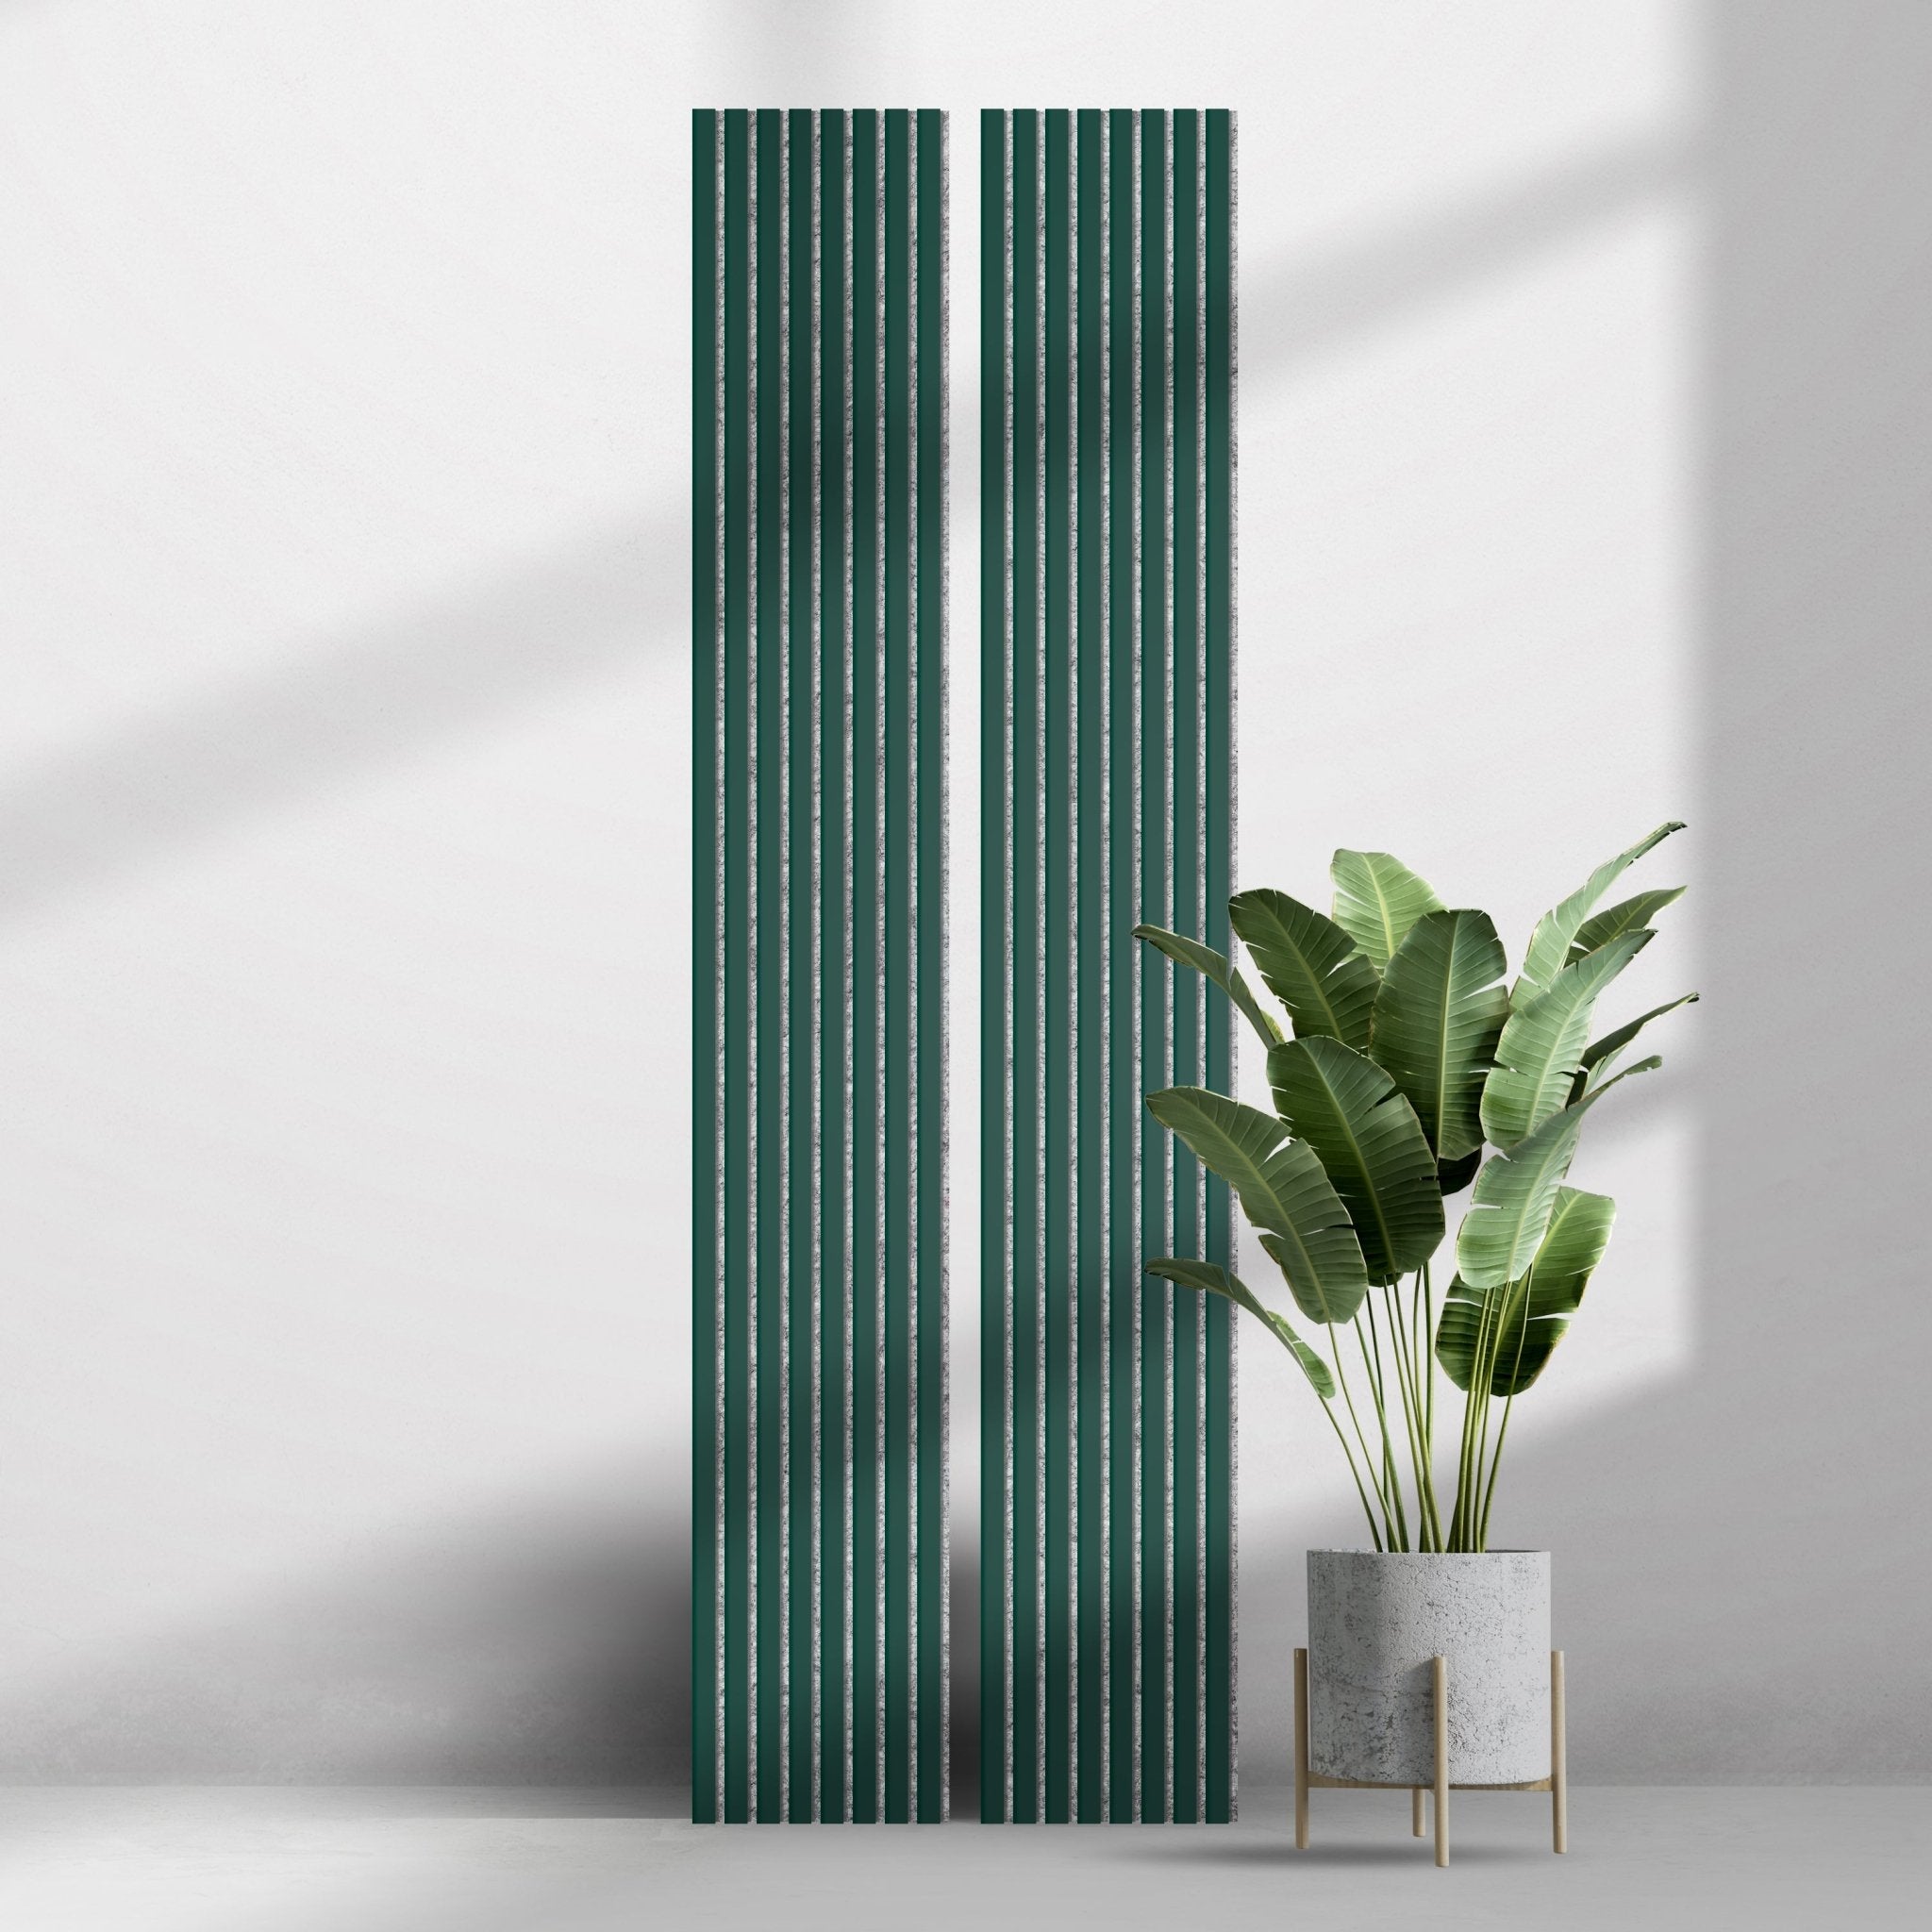 Wall Slat Acoustic Panel in Forest Green, Grey Felt - Slats.co